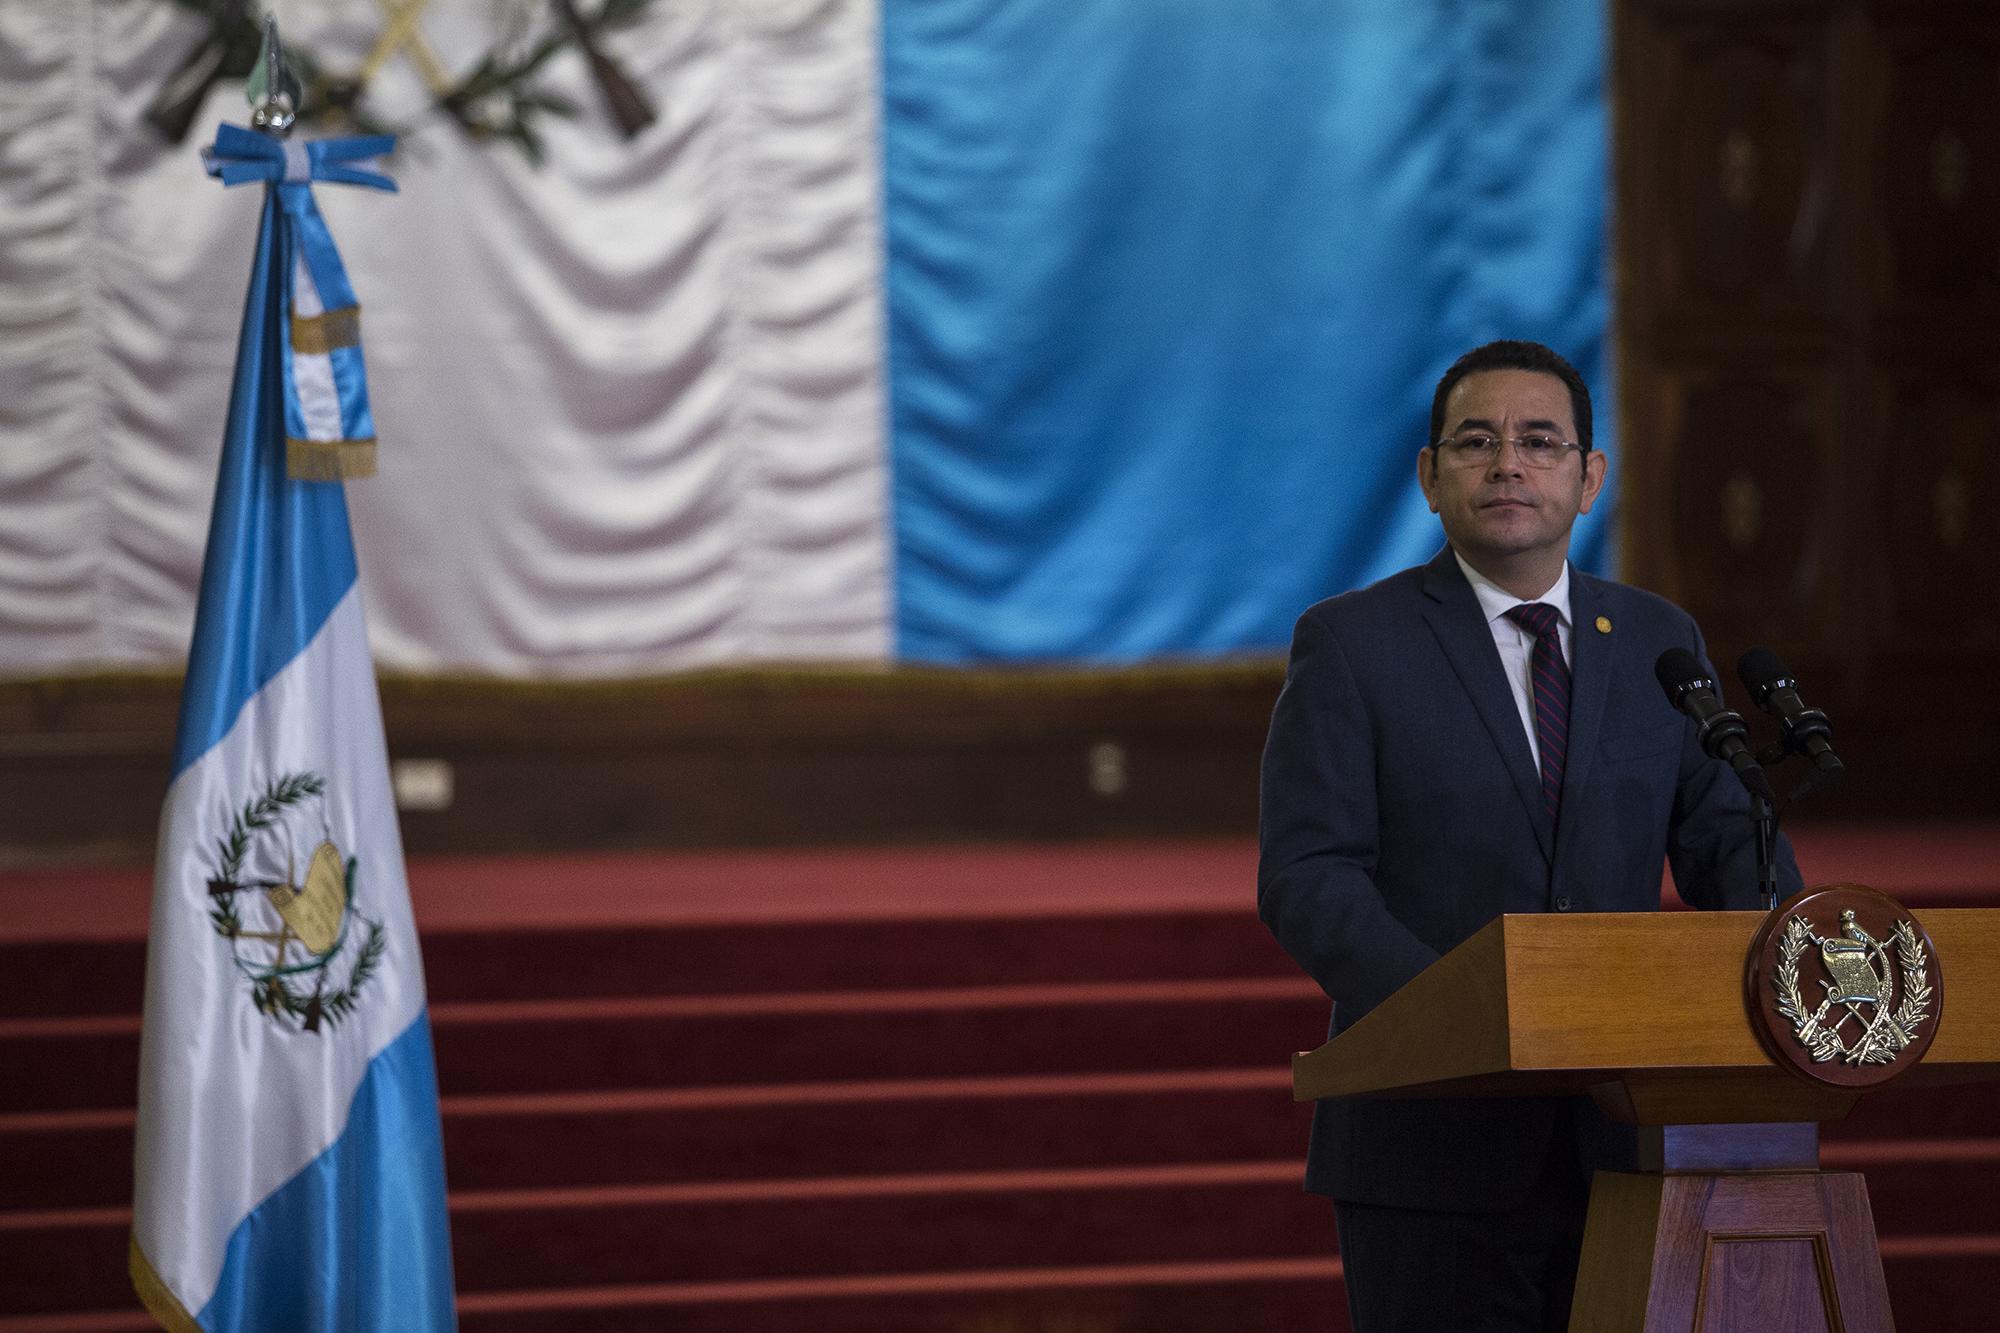 Jimmy Morales, presidente de Guatemala hasta el 14 de enero de 2020, fue el encargado de sepultar a la Comisión Internacional contra la Corrupción y la Impunidad en Guatemala (Cicig) al no renovar el mandato de dos años que se venció en septiembre. Morales, quien fue investigado por financiamiento irregular, ha dicho en las últimas semanas: 